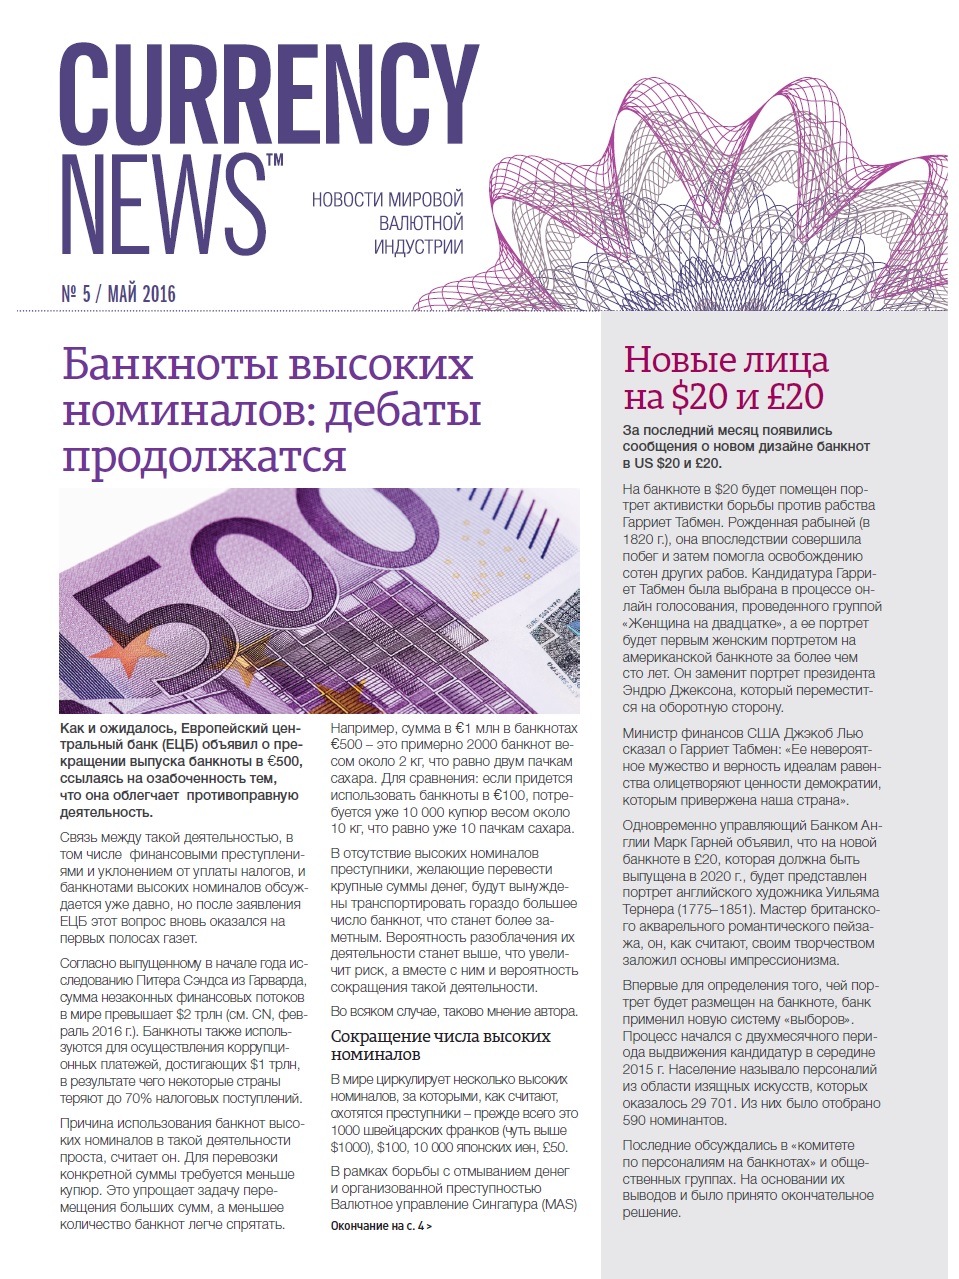 «Currency News: Новости мировой валютной индустрии» № 5, 2016